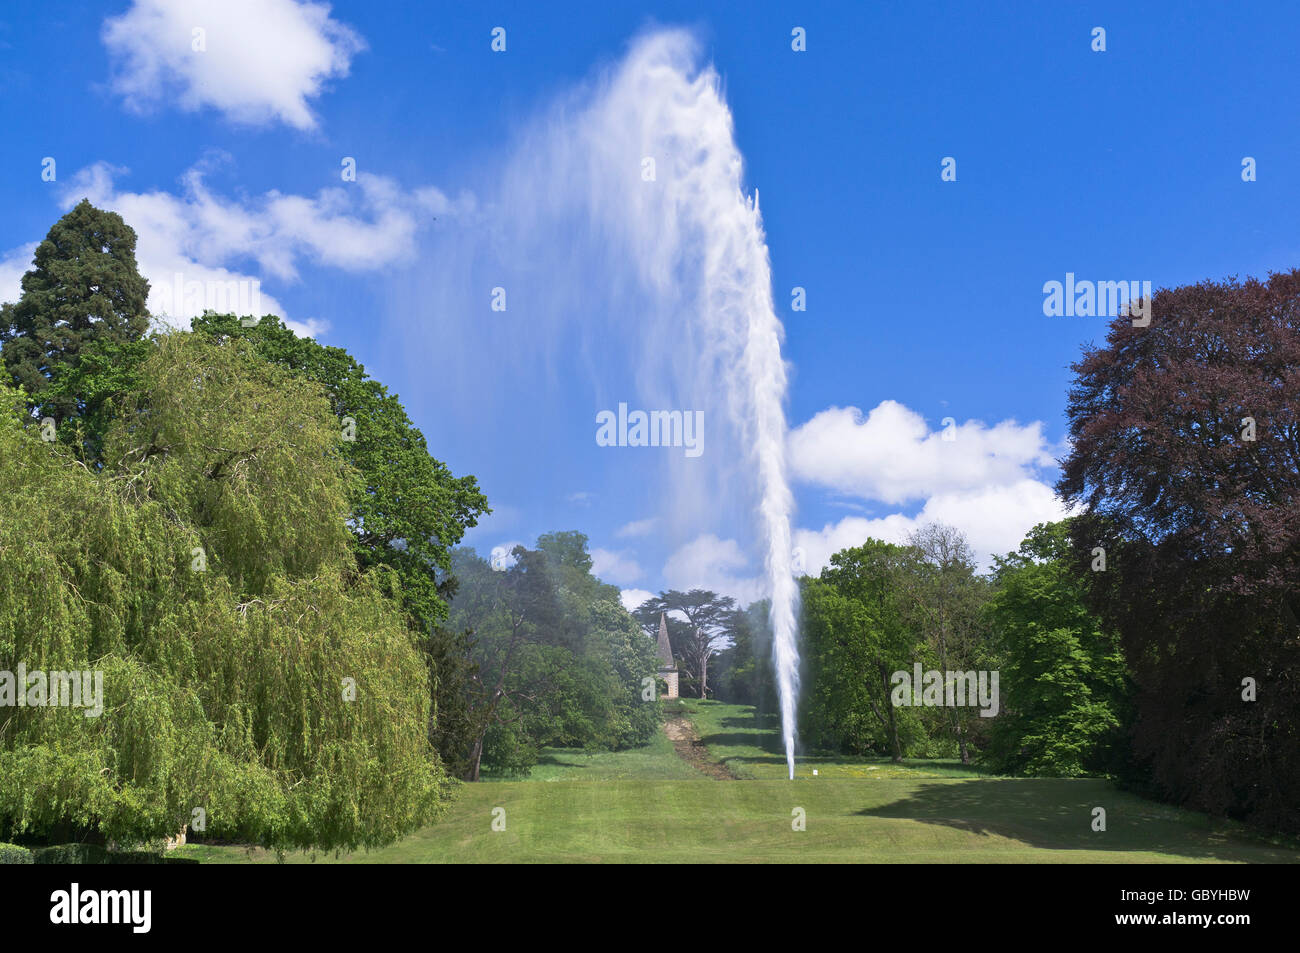 dh Stanway House COTSWOLDS GLOUCESTERSHIRE höchsten britischen Brunnen 300 Meter Hoher Springbrunnen mit einem Strahl auf dem Gelände, Gartenwasser und Gärten Stockfoto